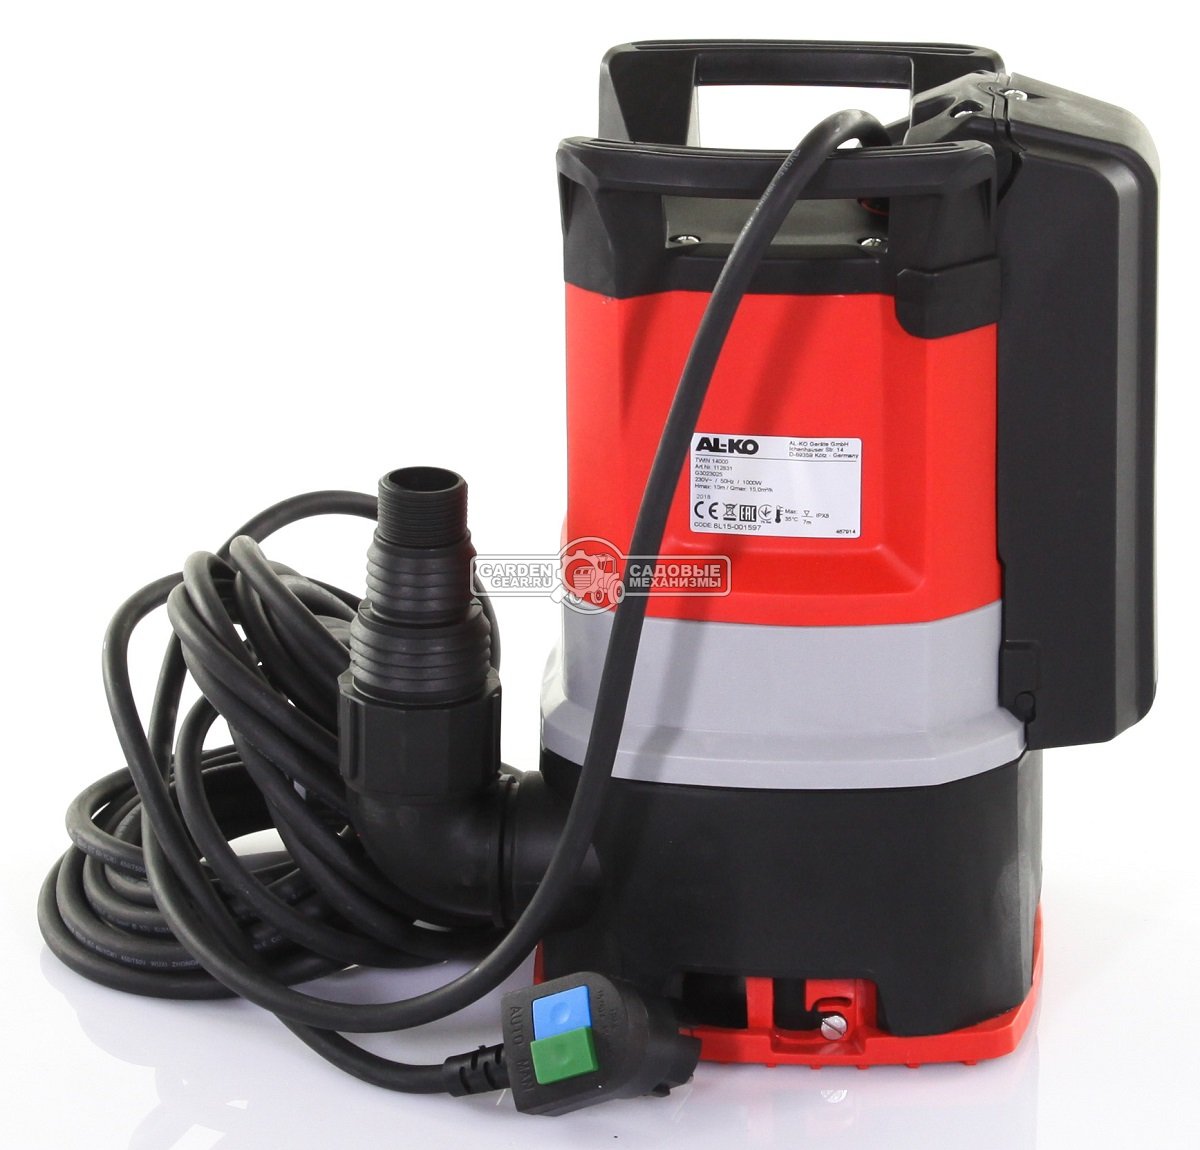 Дренажный насос Al-ko Twin 14000 Premium для грязной воды (PRC, 1000 Вт., 10 м, 15 м3/час, 8.2 кг.)